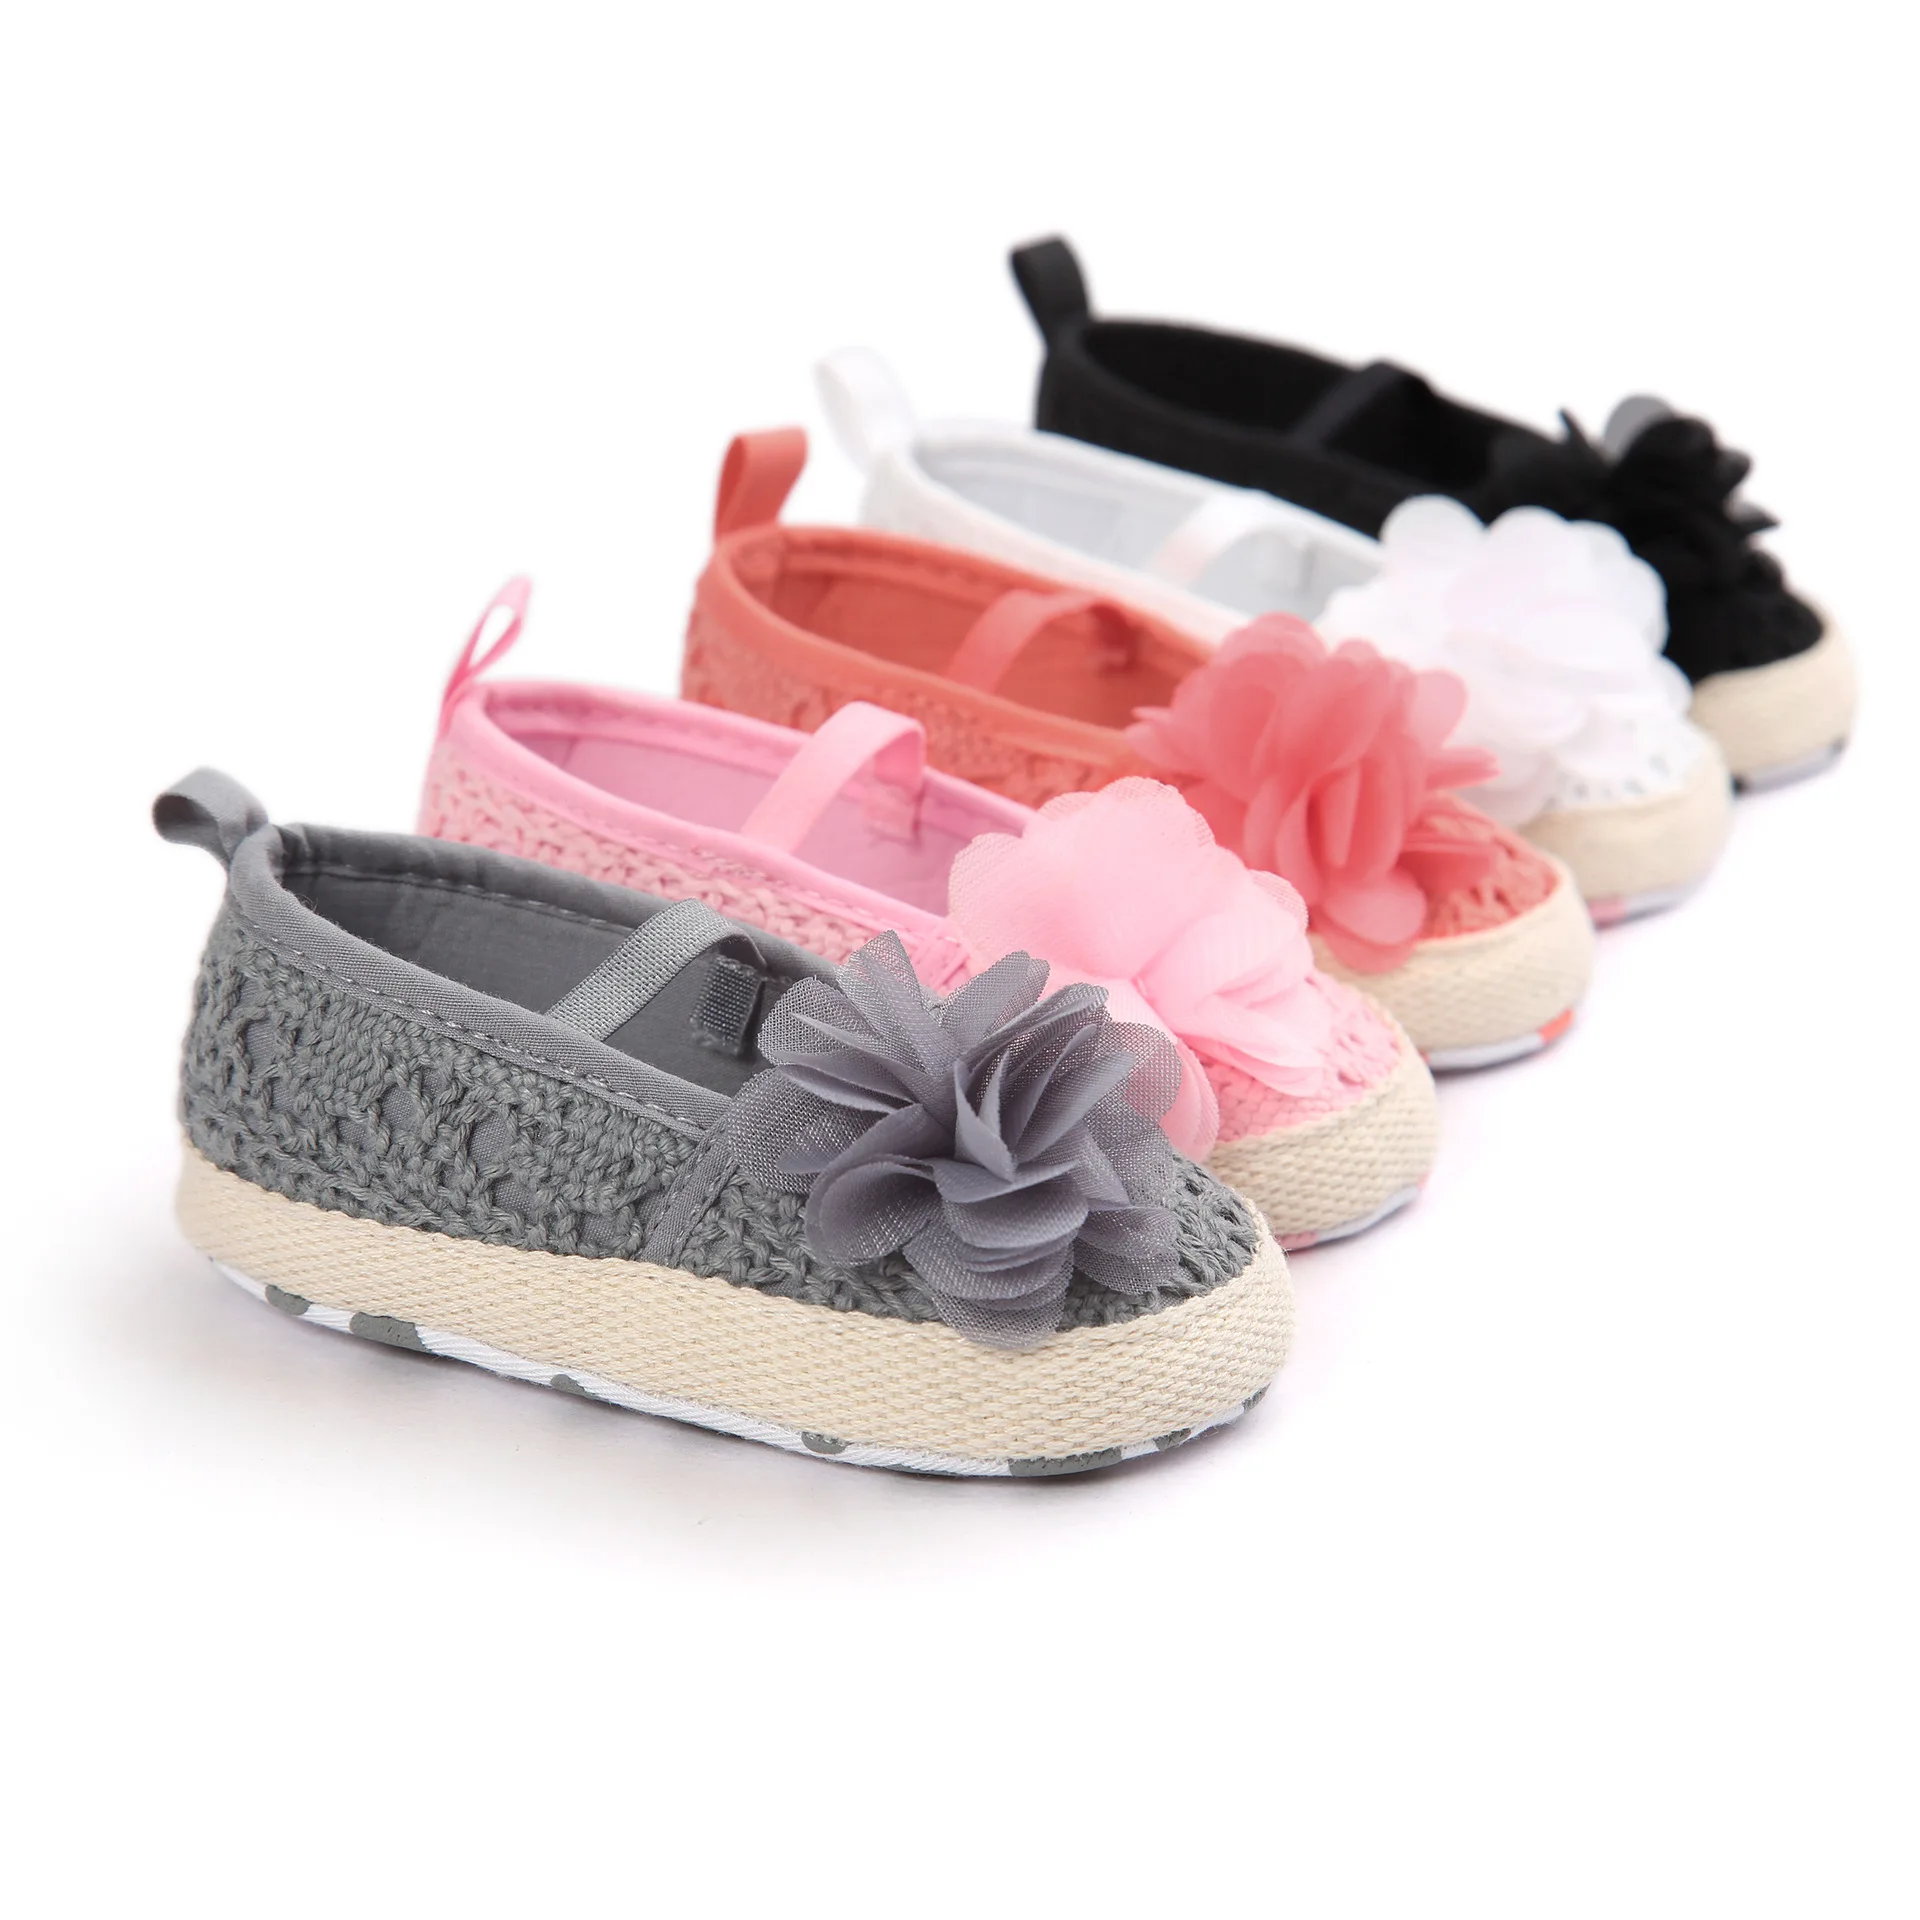 1 пара; 5 цветов; детские сандалии; удобная обувь с мягкой подошвой; модная детская обувь принцессы; TWS0234